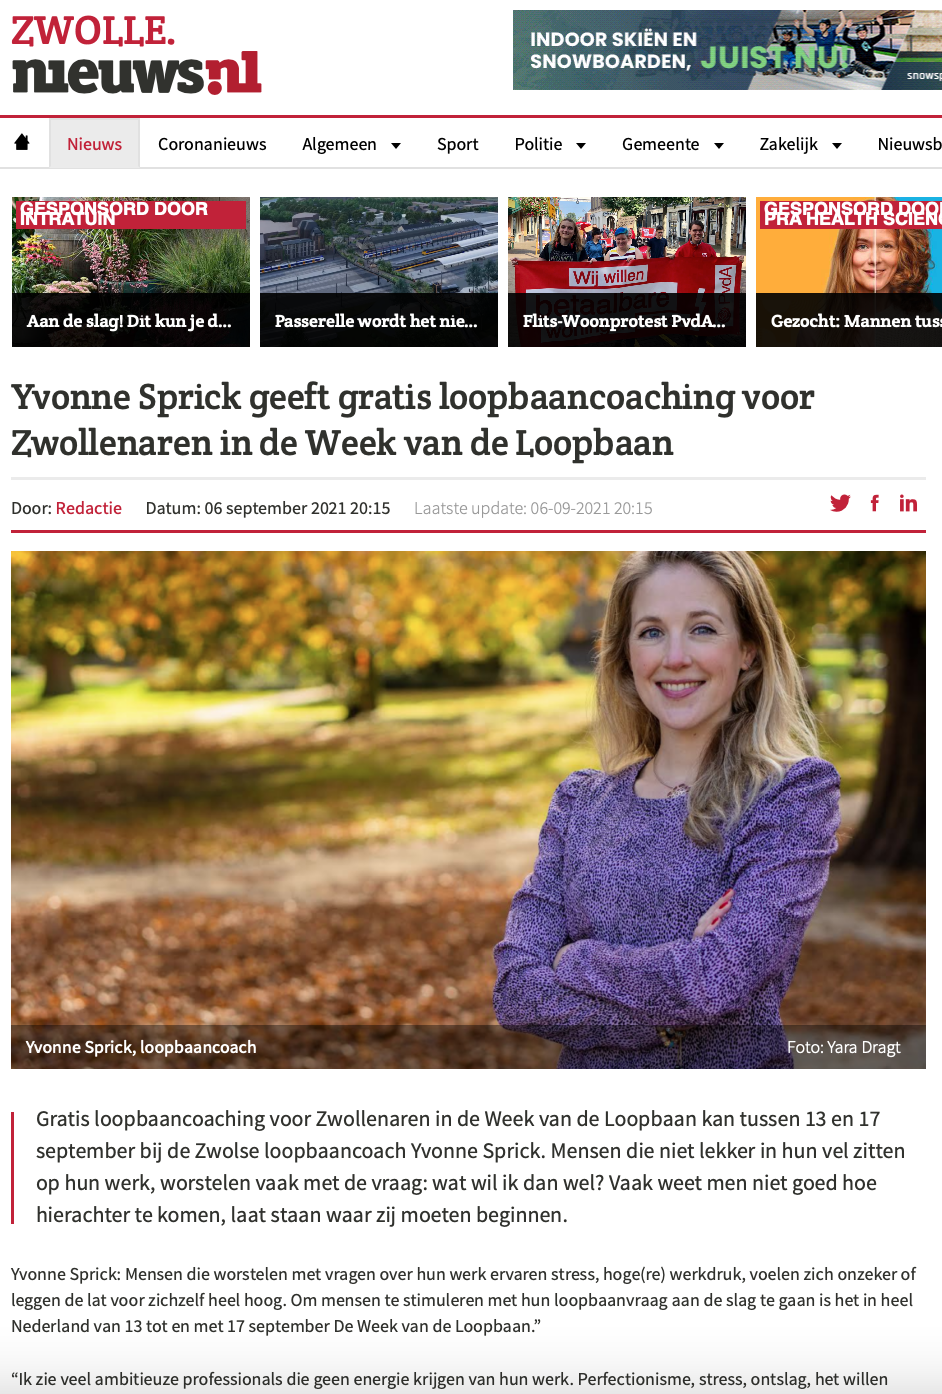 Zwolle nieuws.nl Loopbaancoach Zwolle Yvonne Sprick www.yvonnesprick.nl Gratis loopbaancoaching voor Zwollenaren in de ‘Week van de Loopbaan’